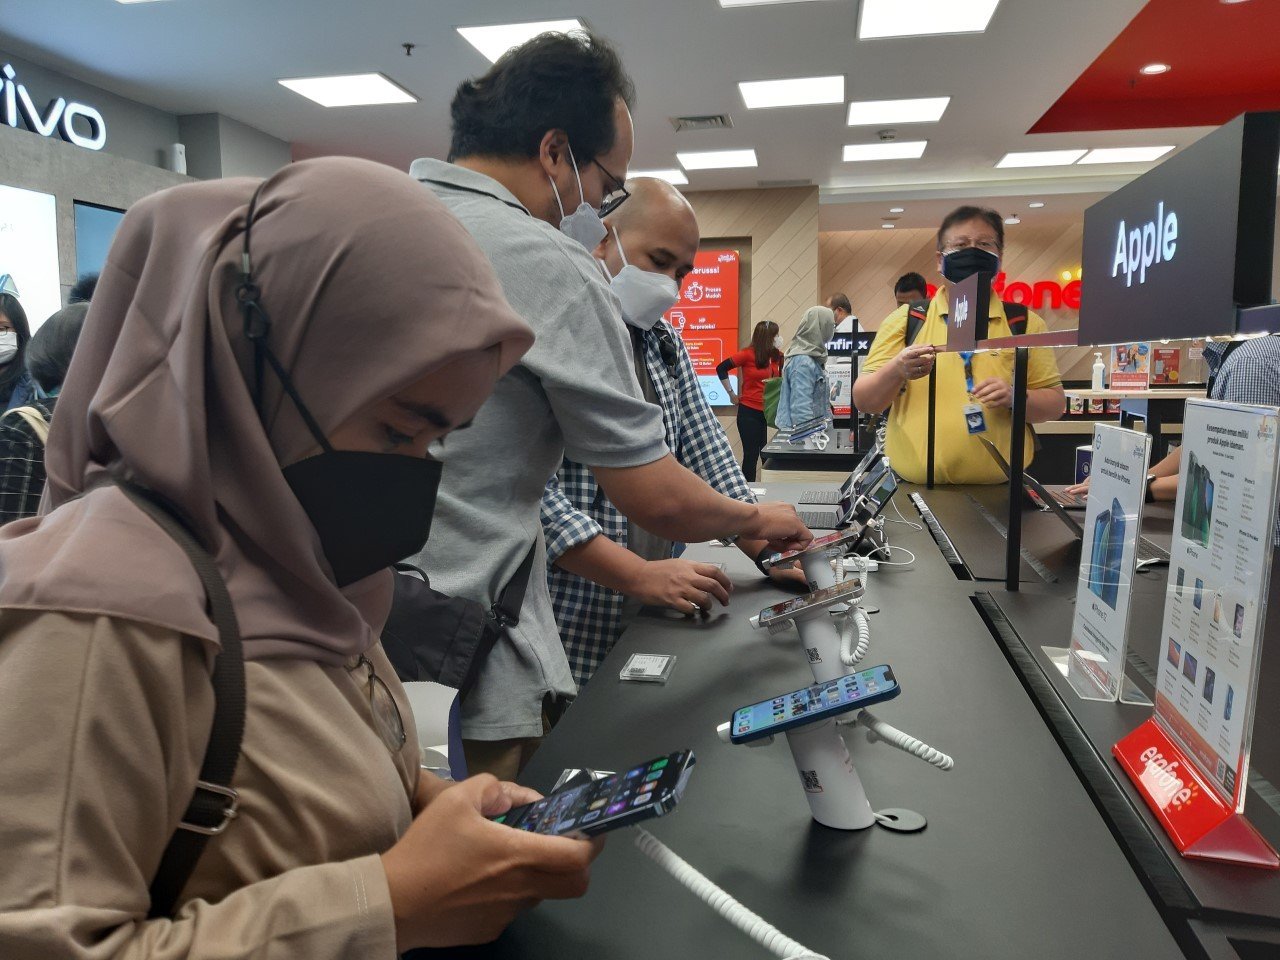 Reasense: Nilai Tukar Rupiah Melemah, Industri Smartphone Tertekan?